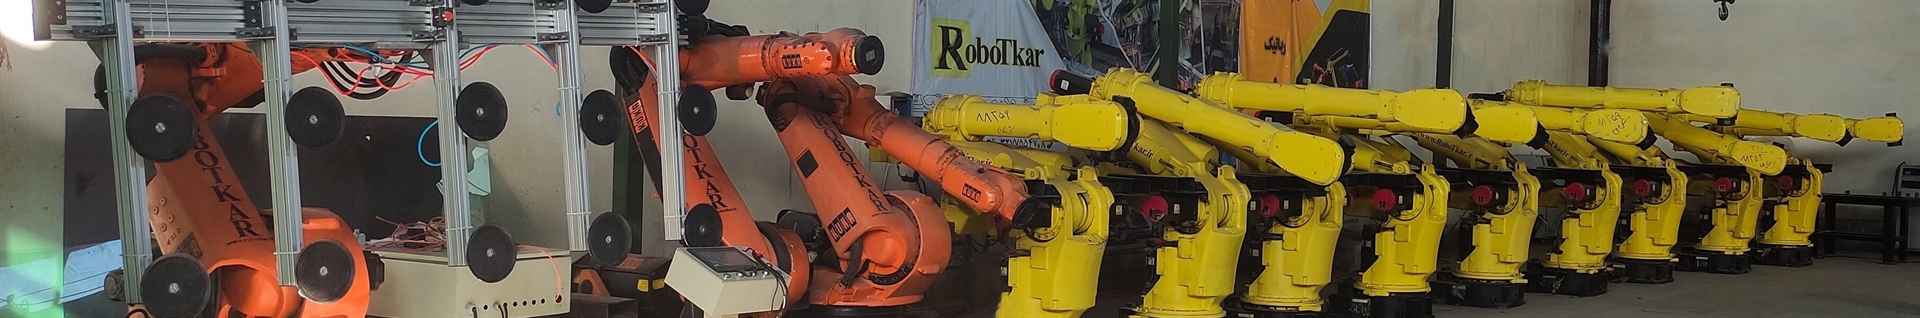 شرکت اتوماسیون و رباتیک صنعتی "ربات کار"